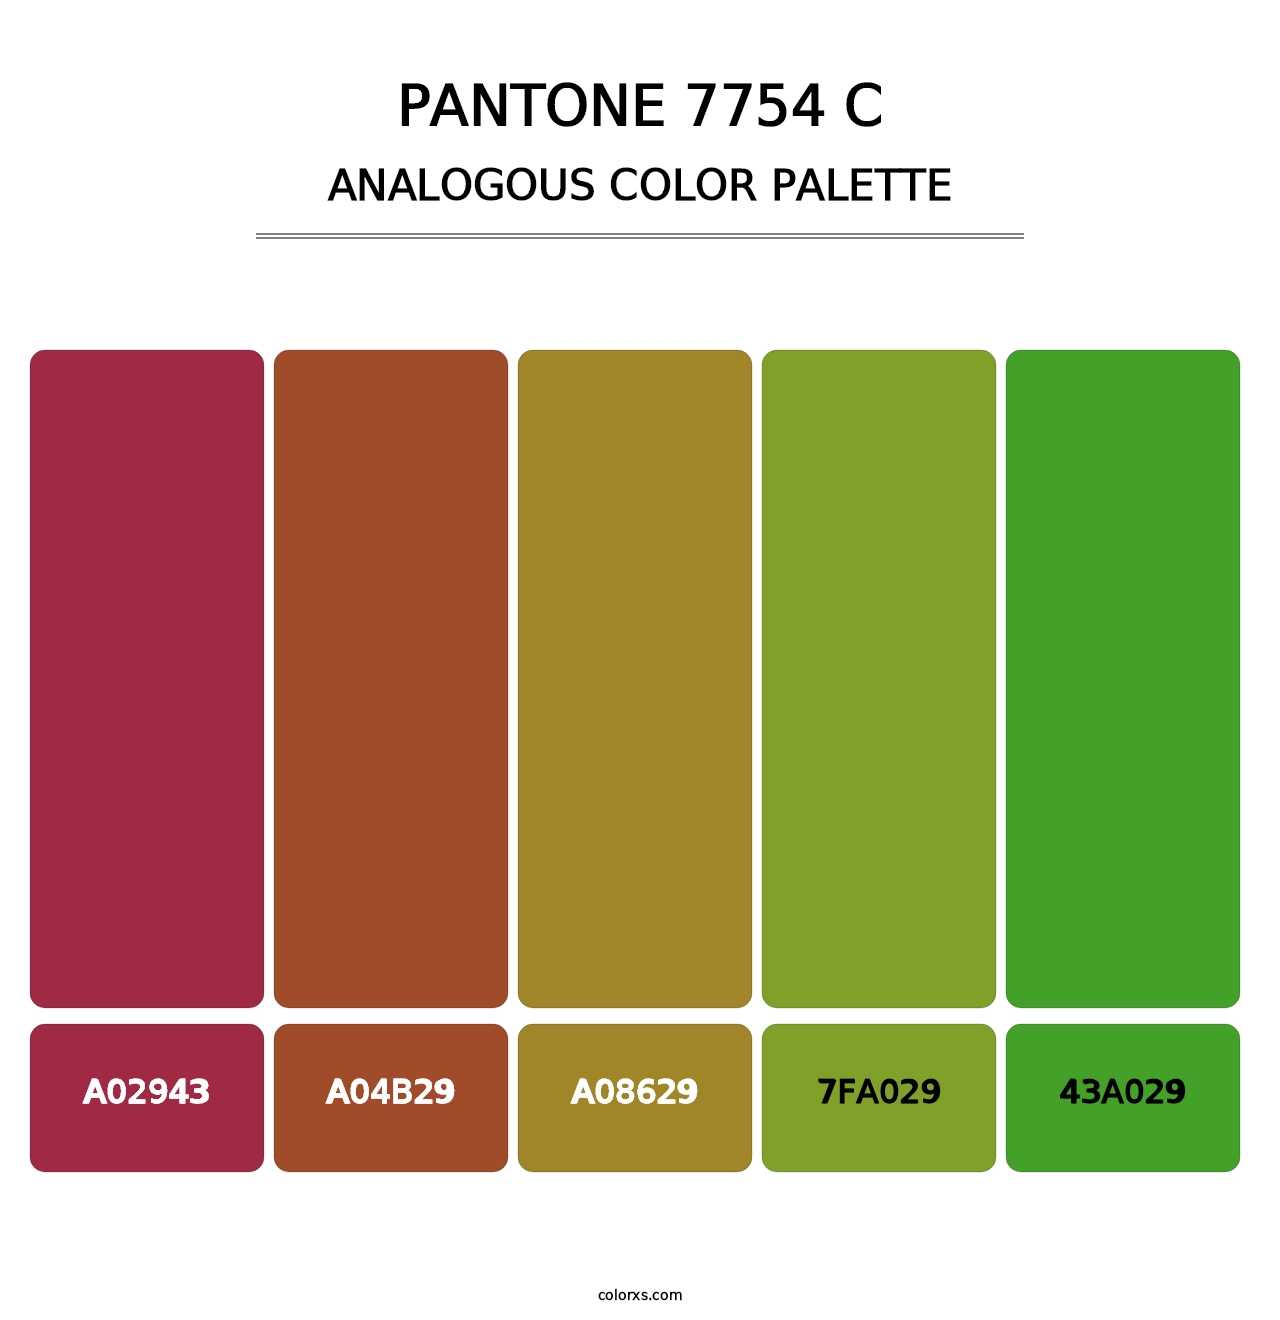 PANTONE 7754 C - Analogous Color Palette